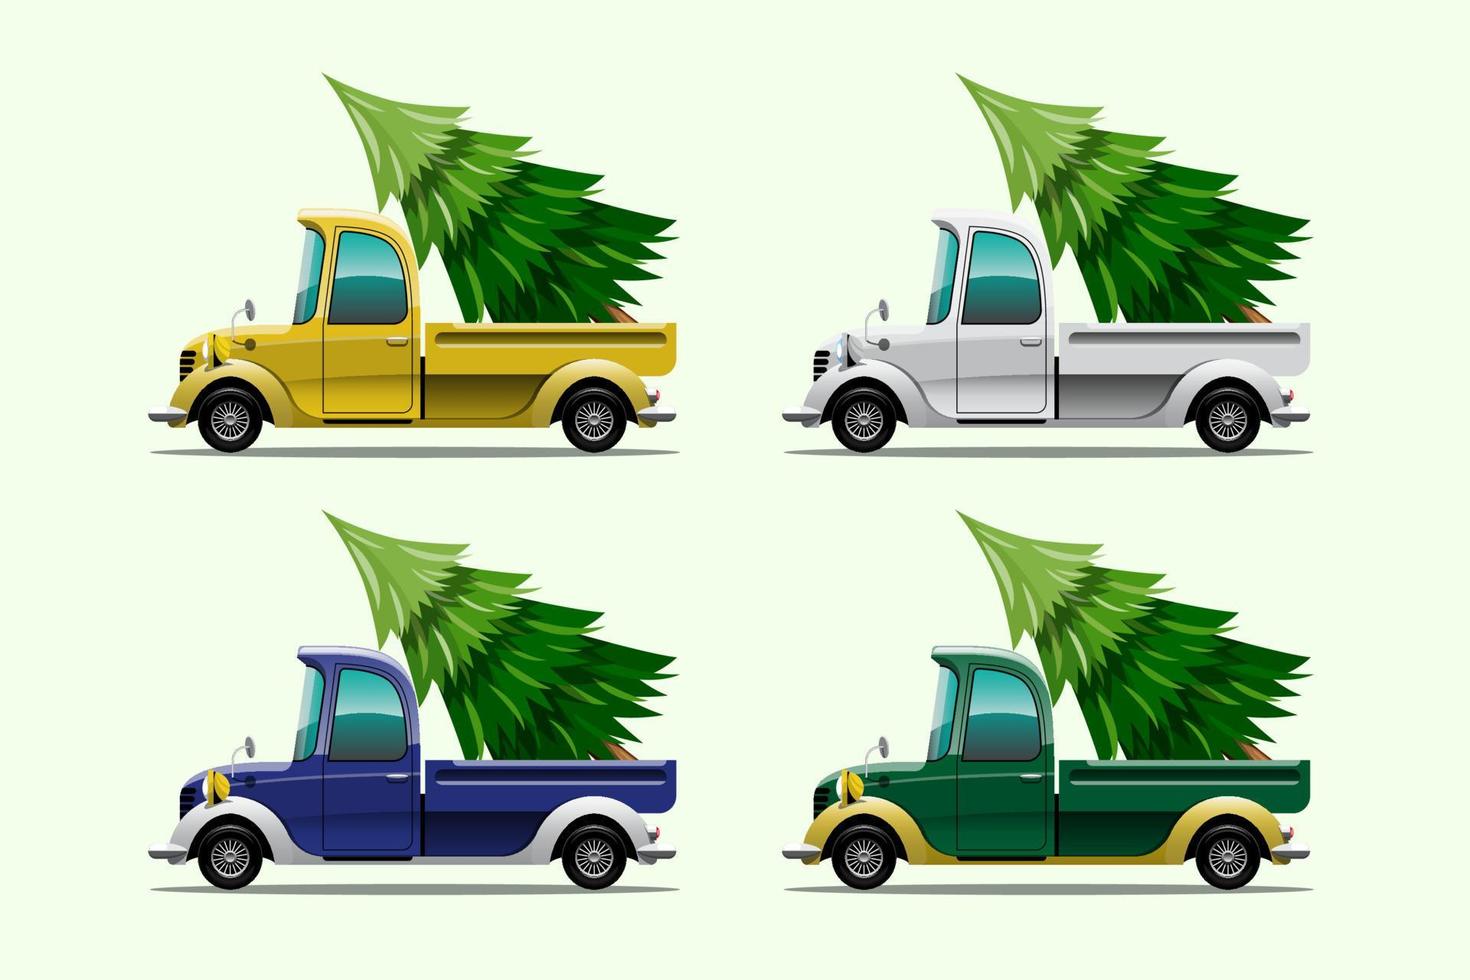 buon natale illustrazione vettoriale retrò camioncino stile vintage con albero di natale.